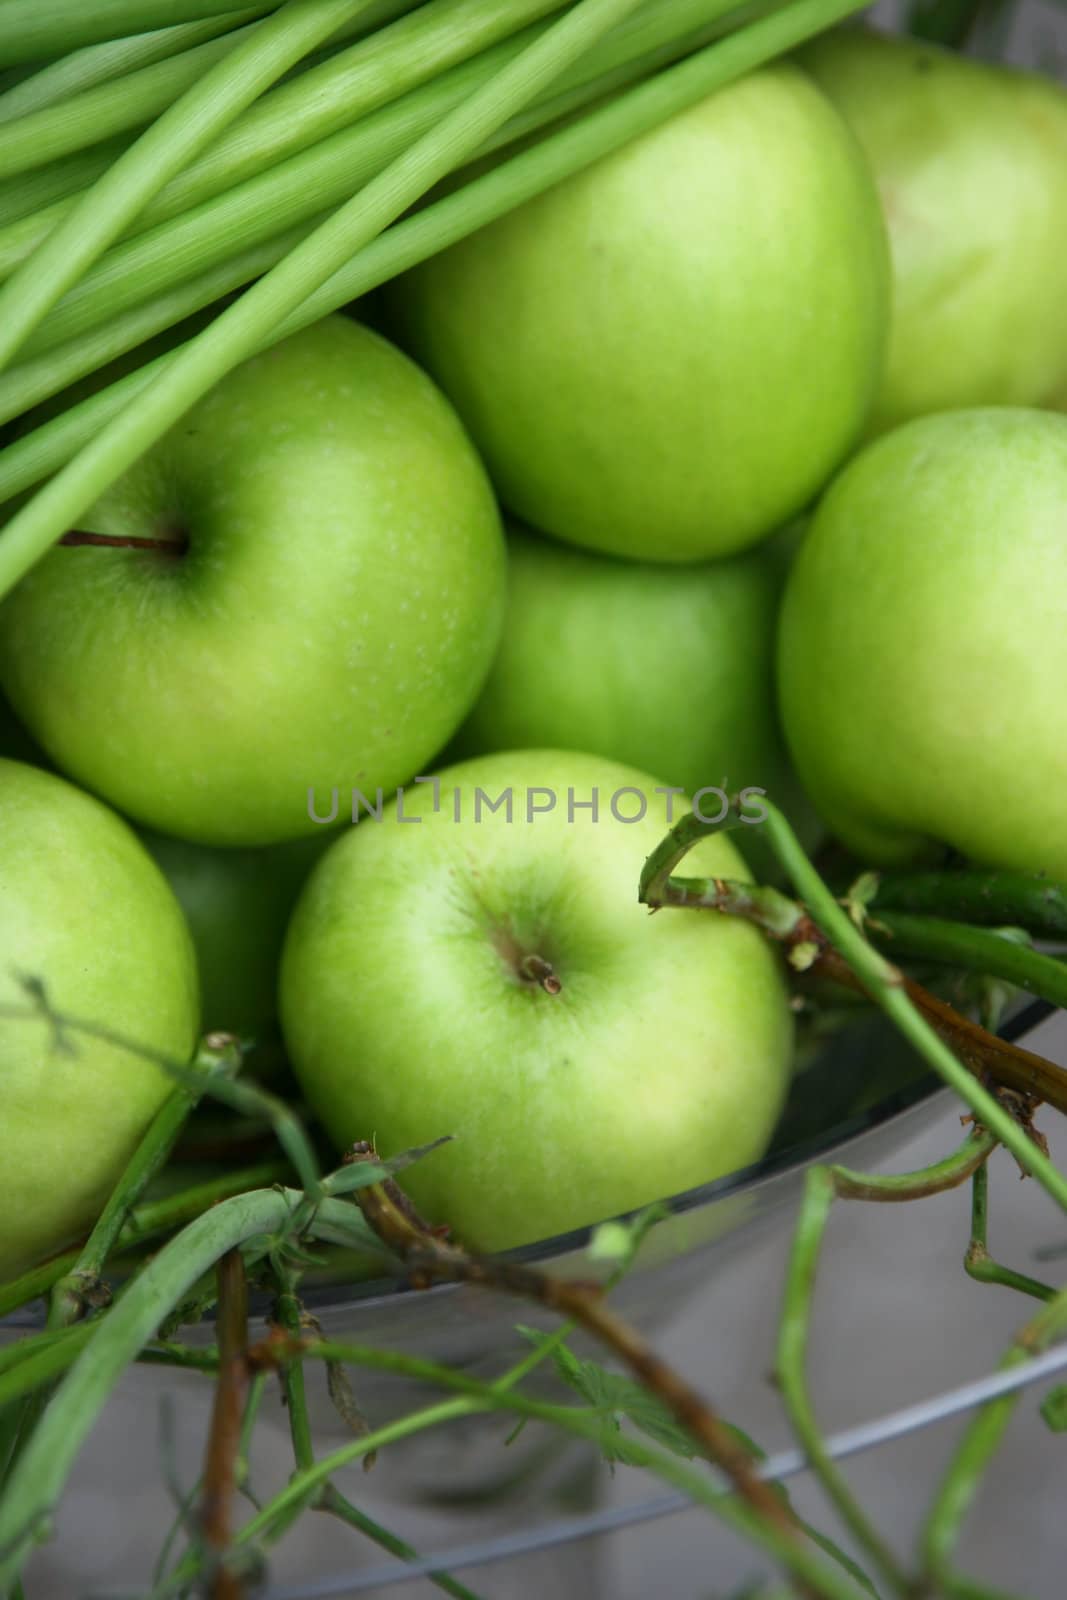 Fine juicy green apples by jalta